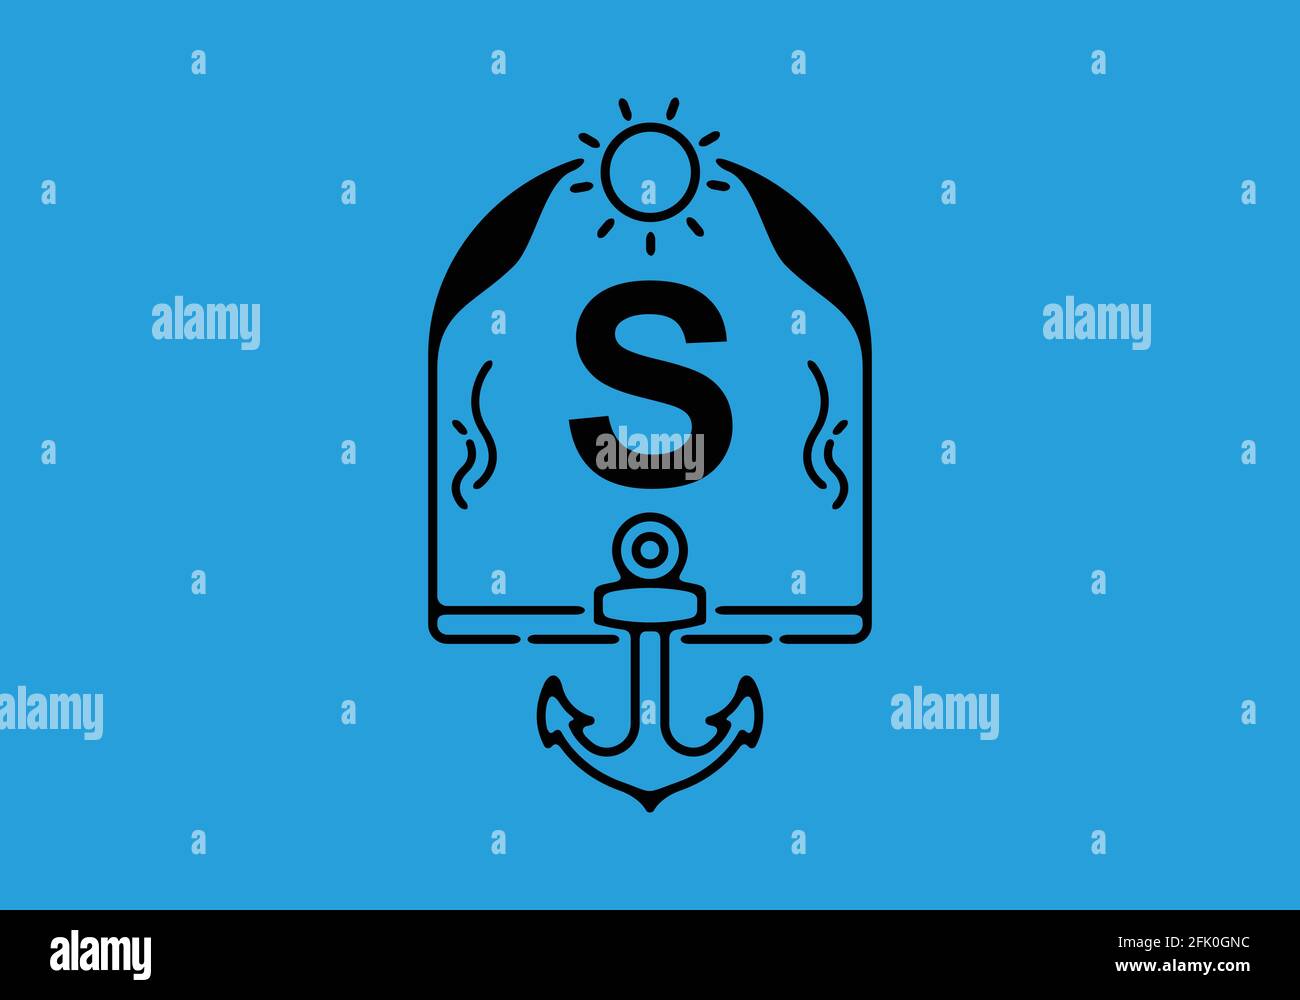 Black line art illustration of S initial letter in anchor frame design Stock Vector